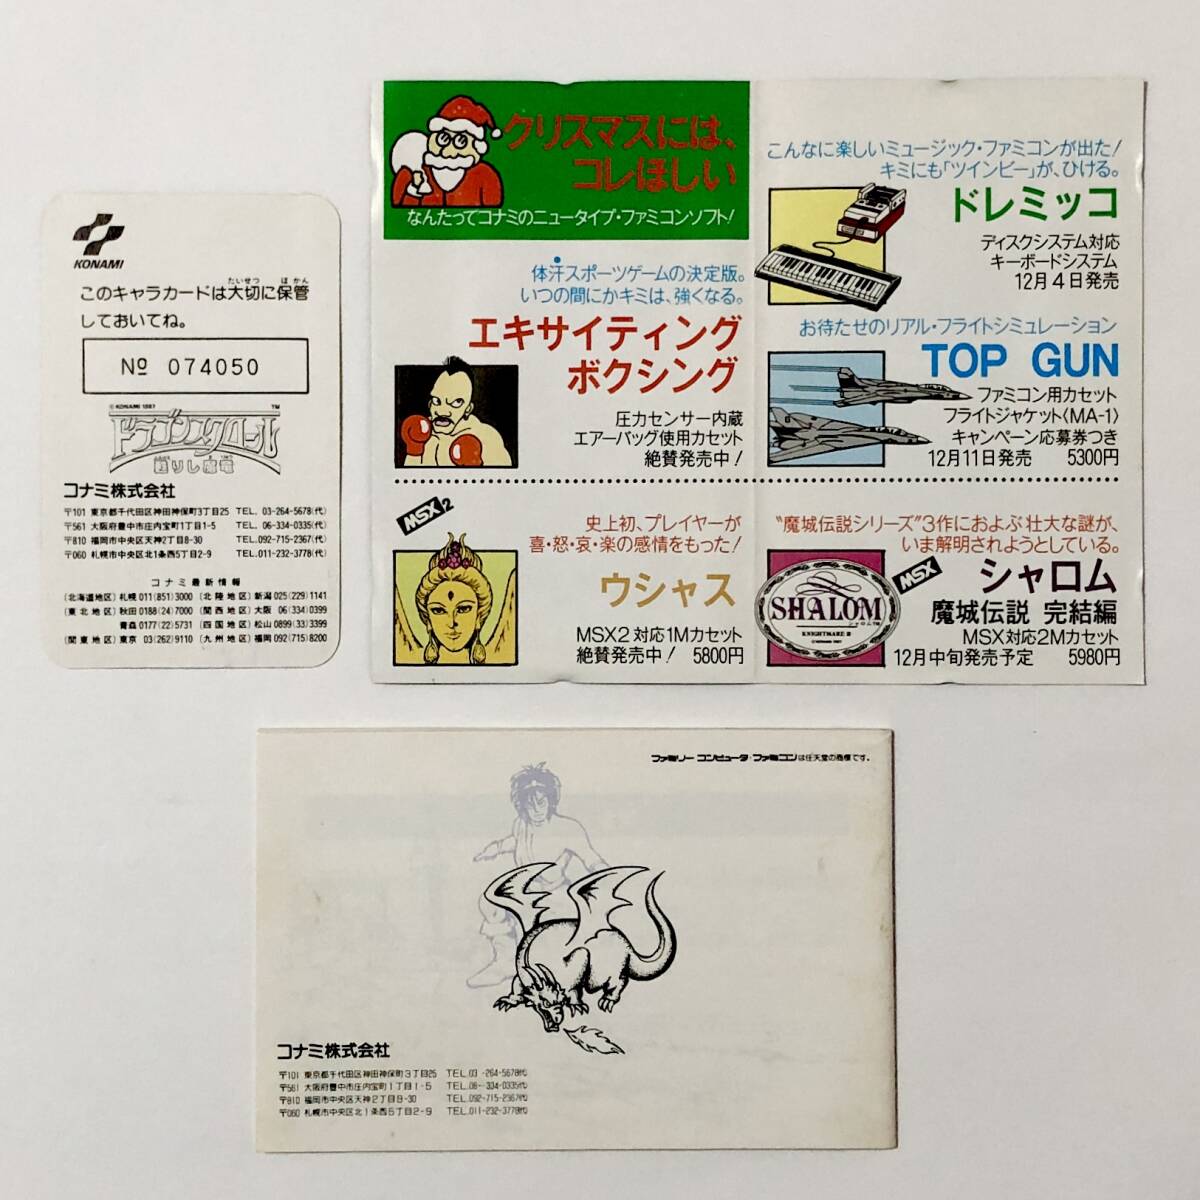 ファミコン ドラゴンスクロール 甦りし魔竜 箱説付き カード付き 痛みあり コナミ Nintendo Famicom Dragon Scroll CIB Tested Konami_画像10